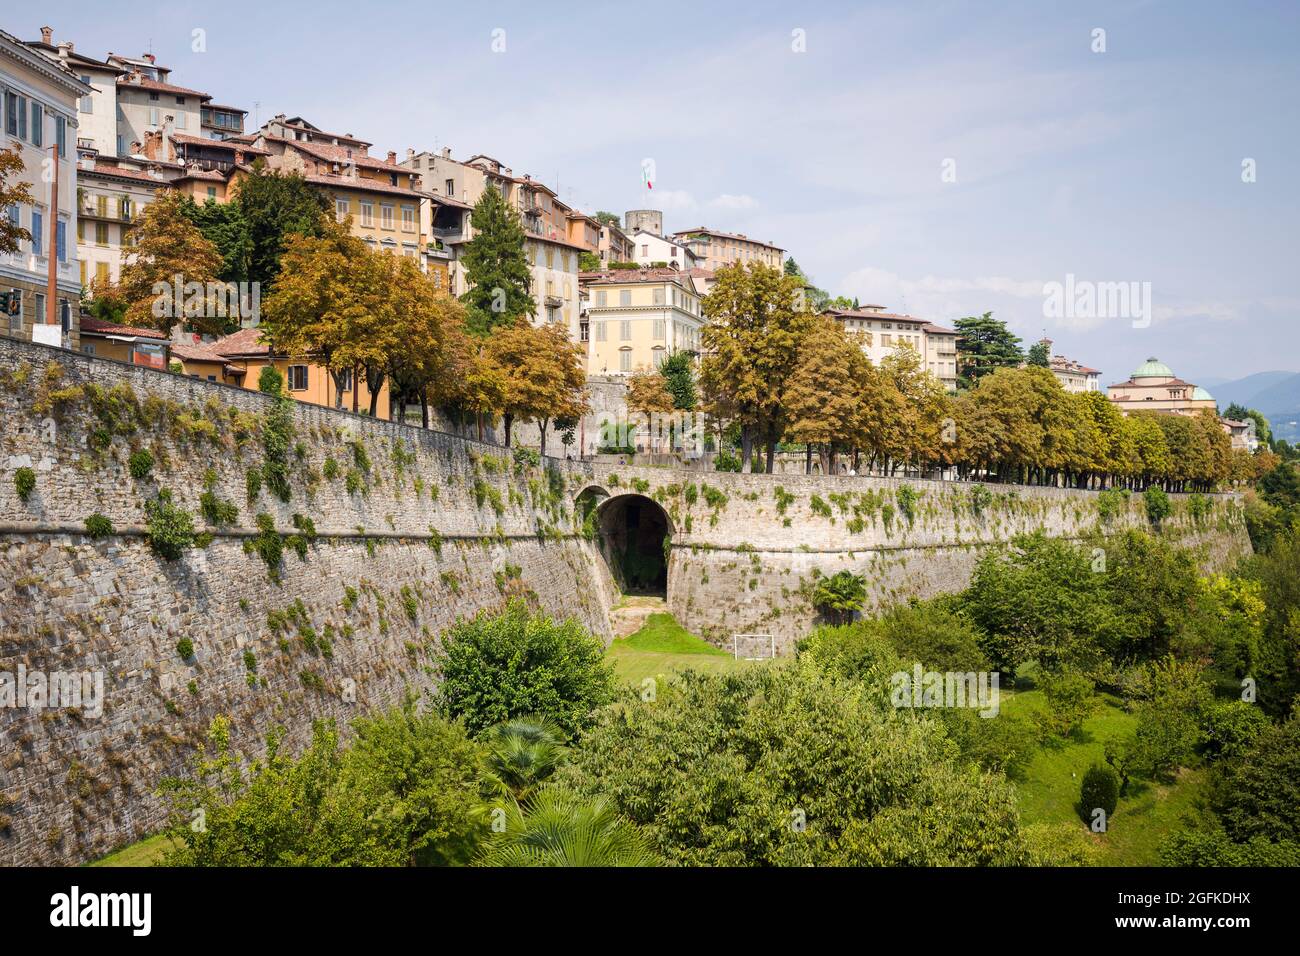 Citta Alta, Bergame, Italie : les remparts vénitiens de la période Renaissance, site classé au patrimoine mondial de l'UNESCO. Banque D'Images